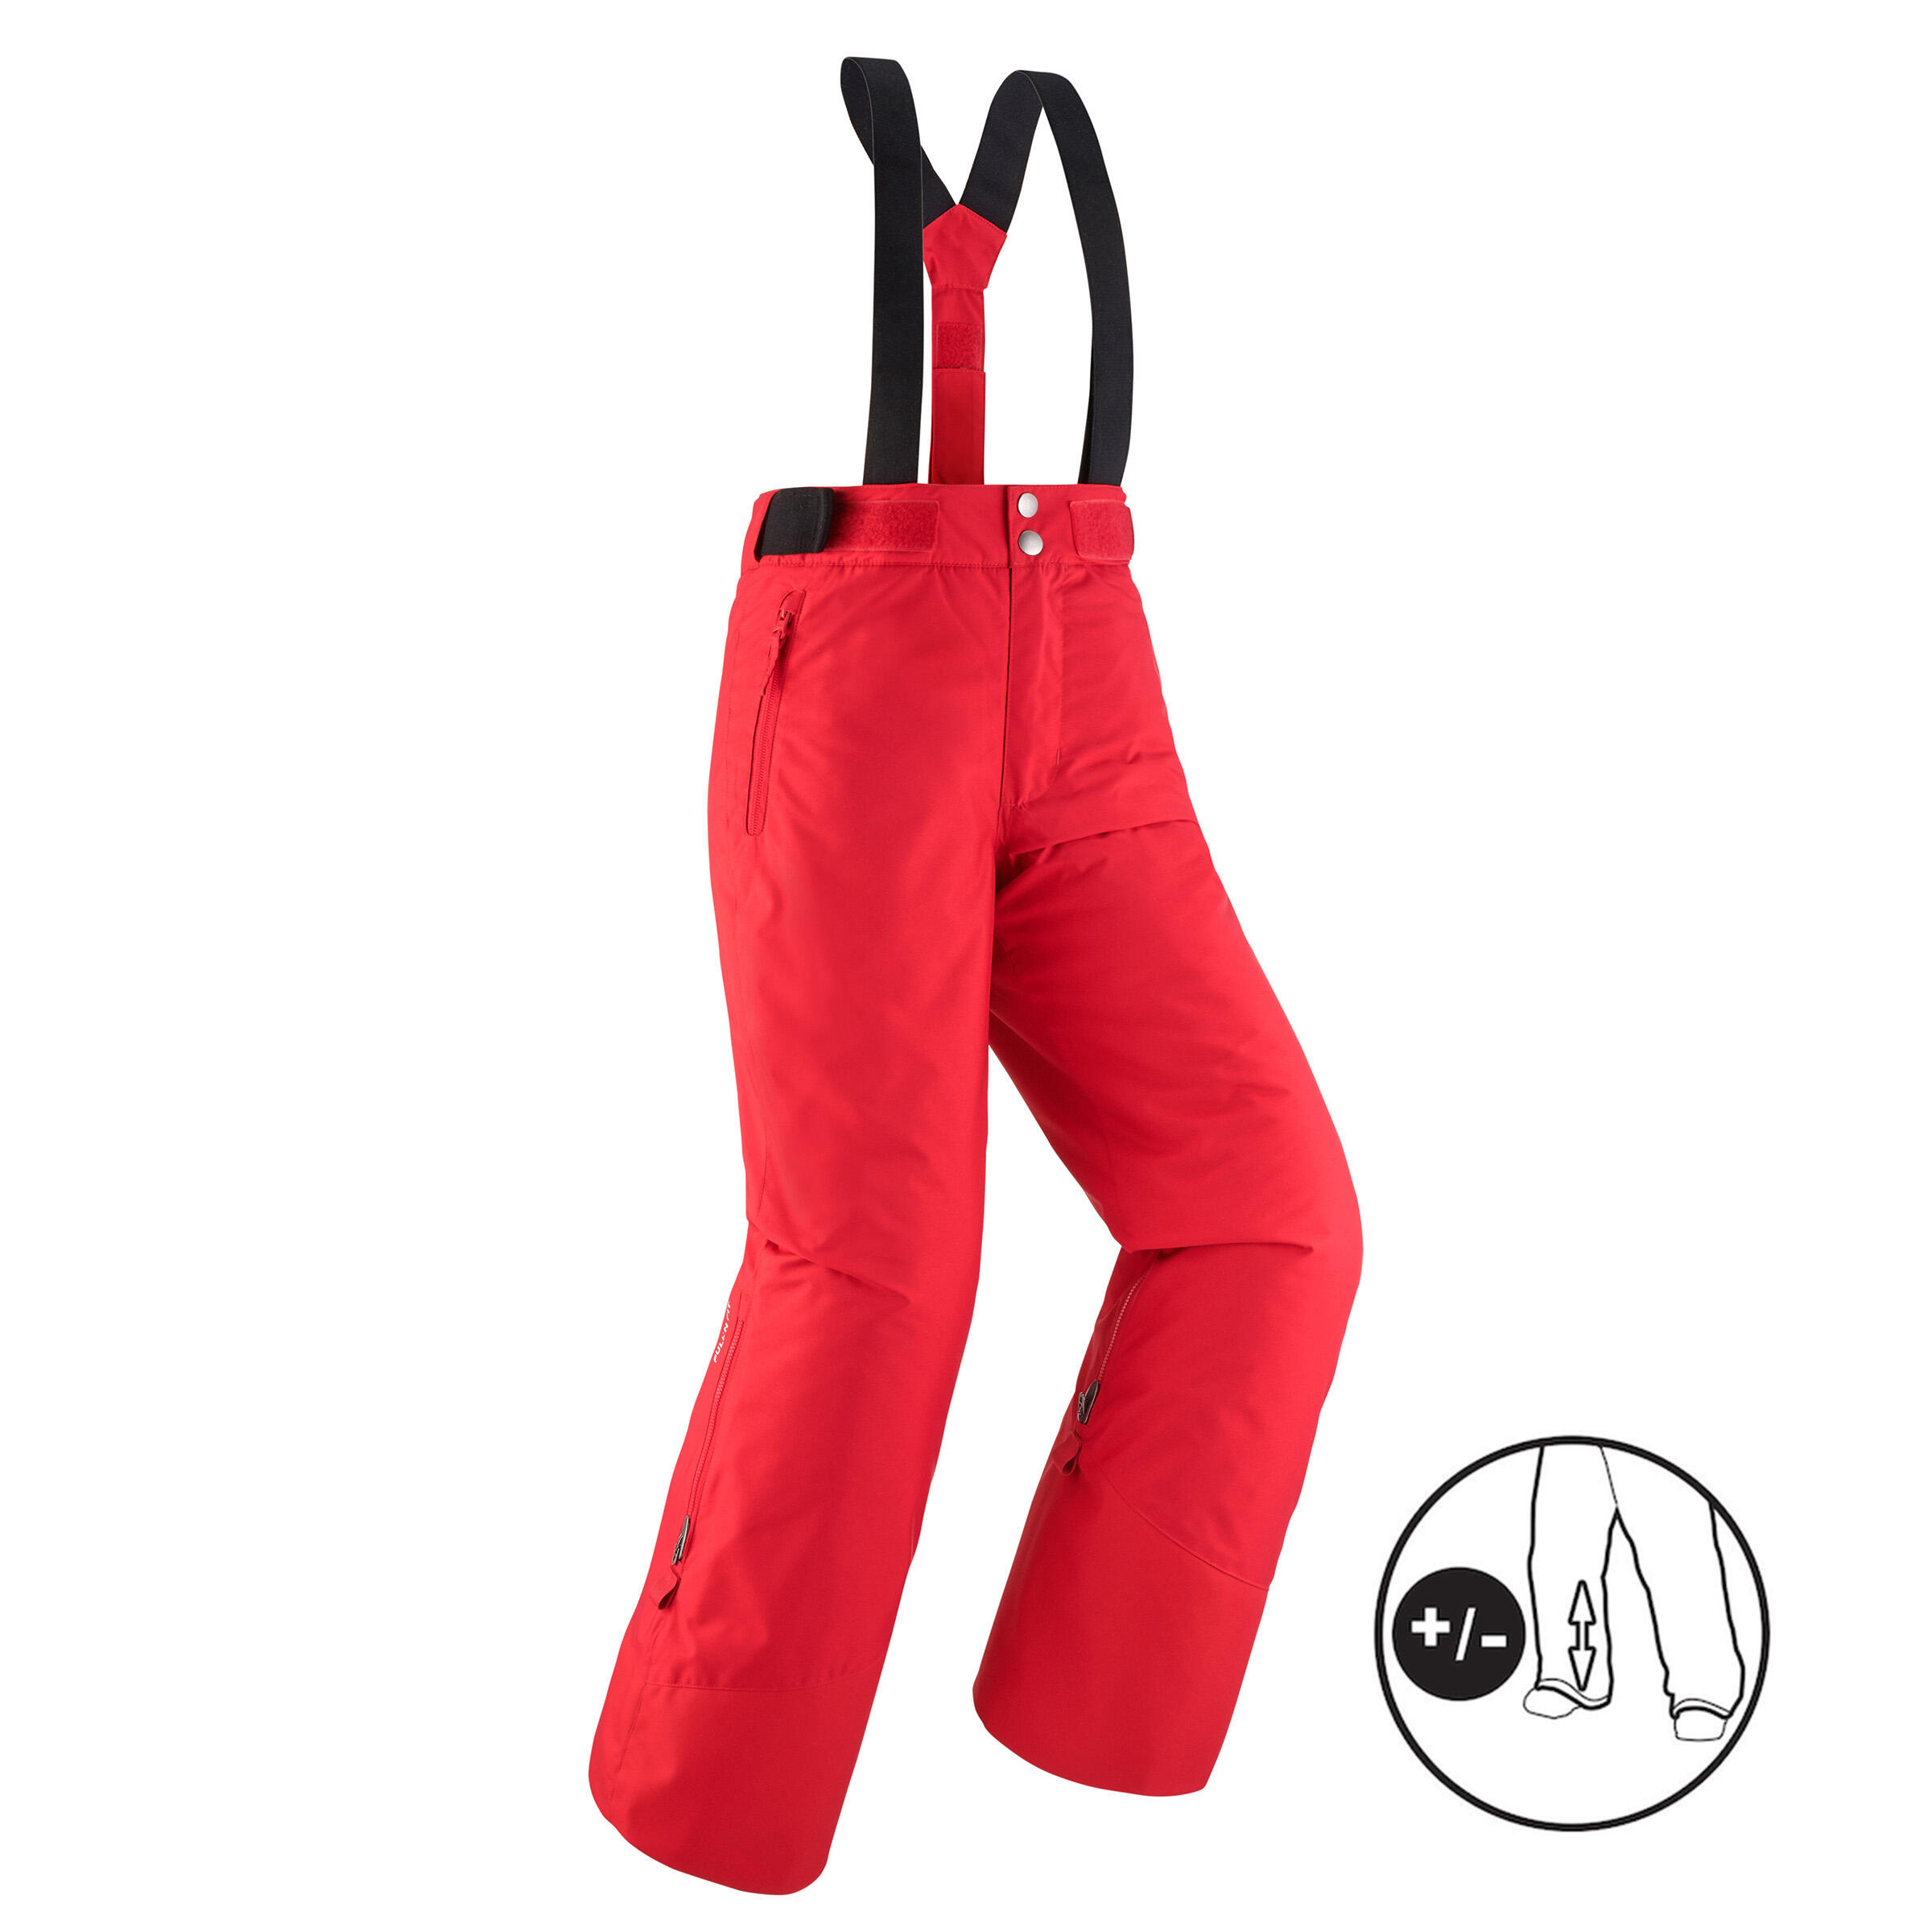 Pantalon călduros impermeabil schi PNF500 Roșu Băieți decathlon.ro  Imbracaminte schi copii